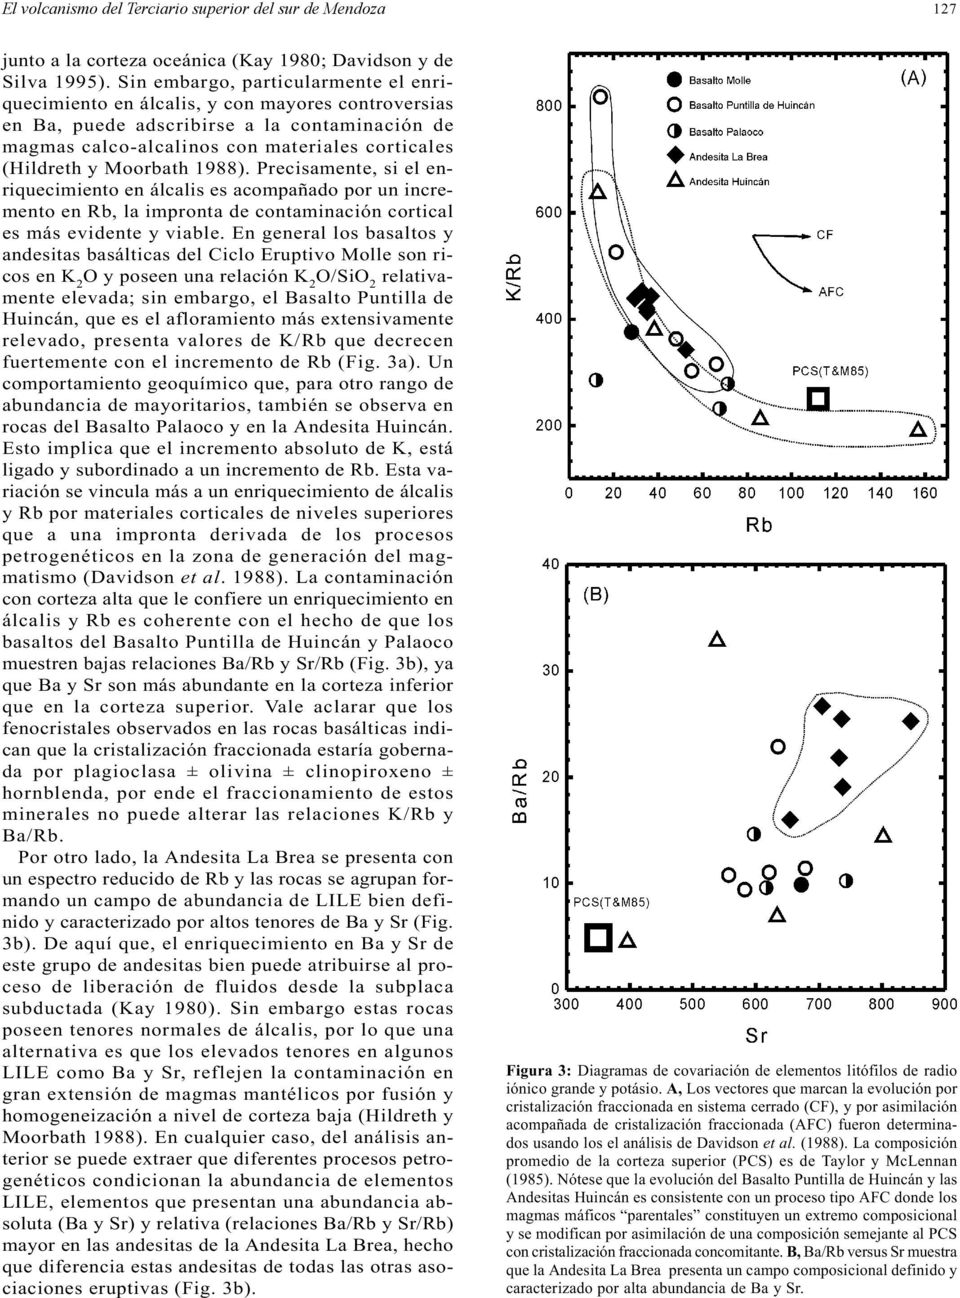 Moorbath 1988). Precisamente, si el enriquecimiento en álcalis es acompañado por un incremento en Rb, la impronta de contaminación cortical es más evidente y viable.